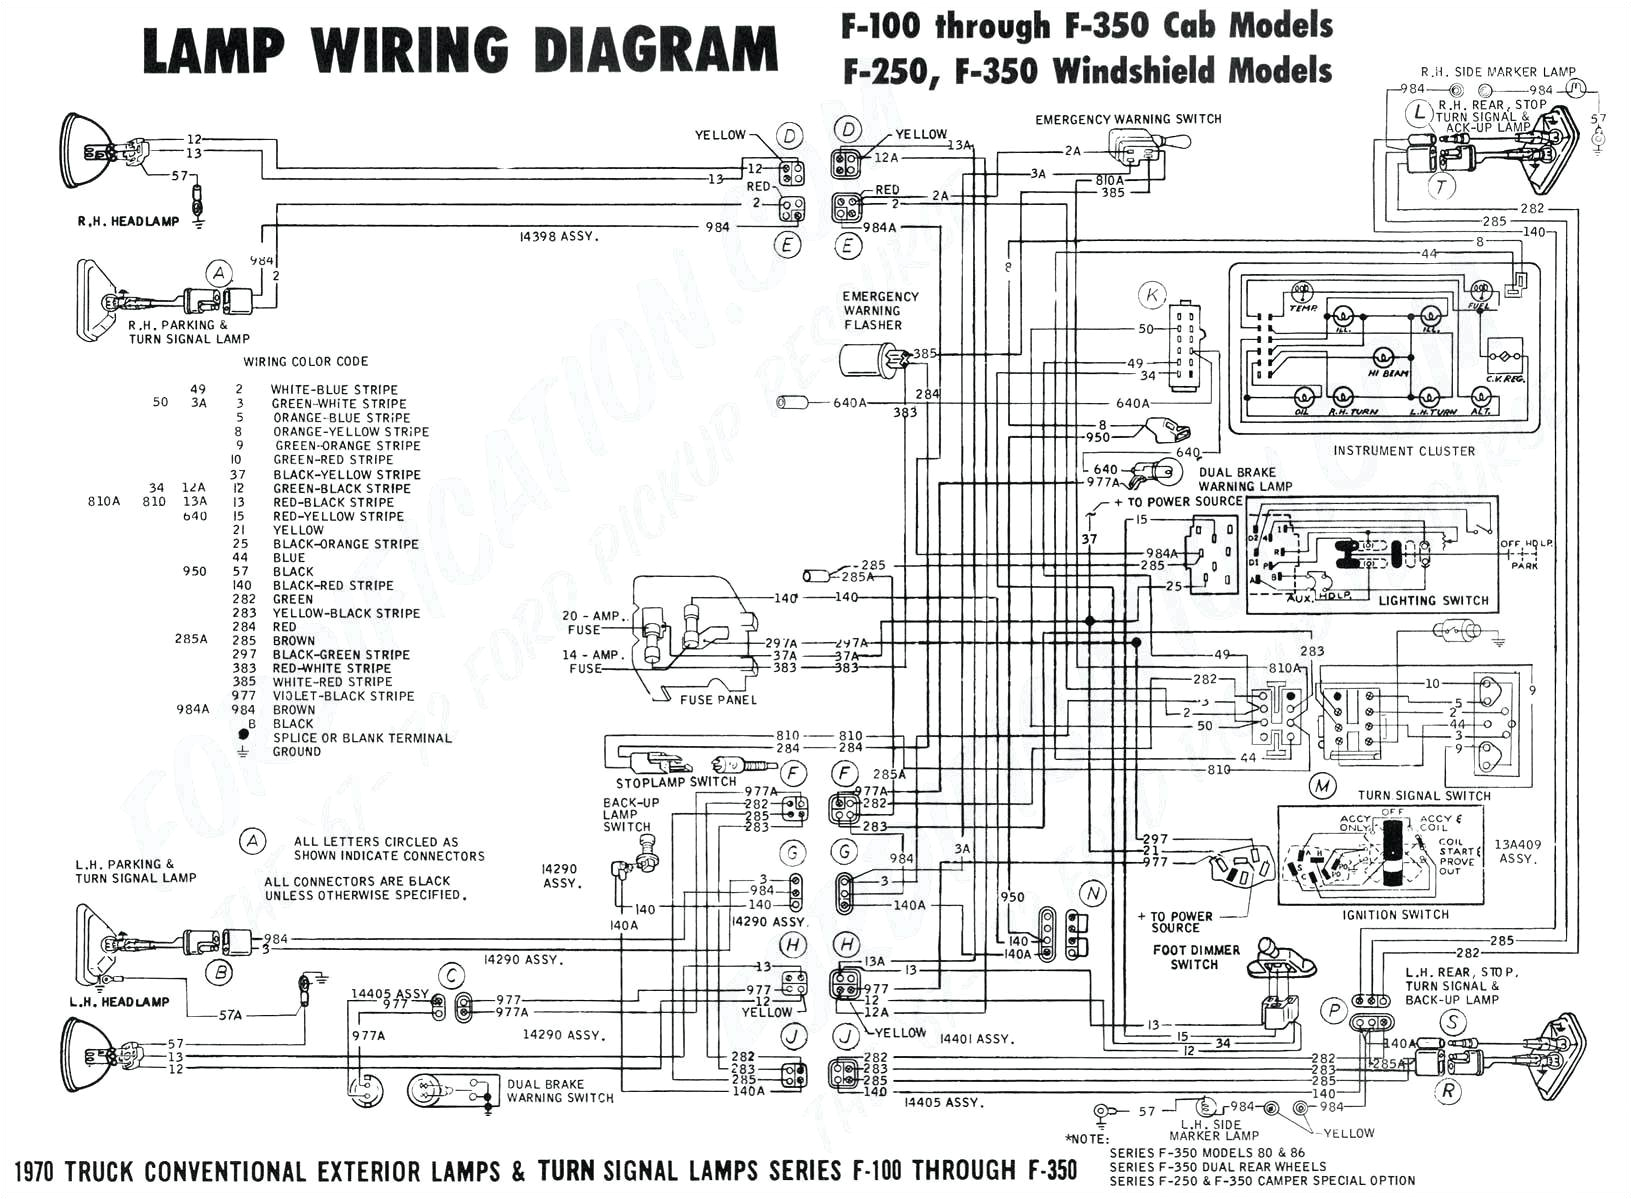 yamaha f150 wiring diagram wiring diagram ame yamaha f150 fuse box wiring diagrams second yamaha f150